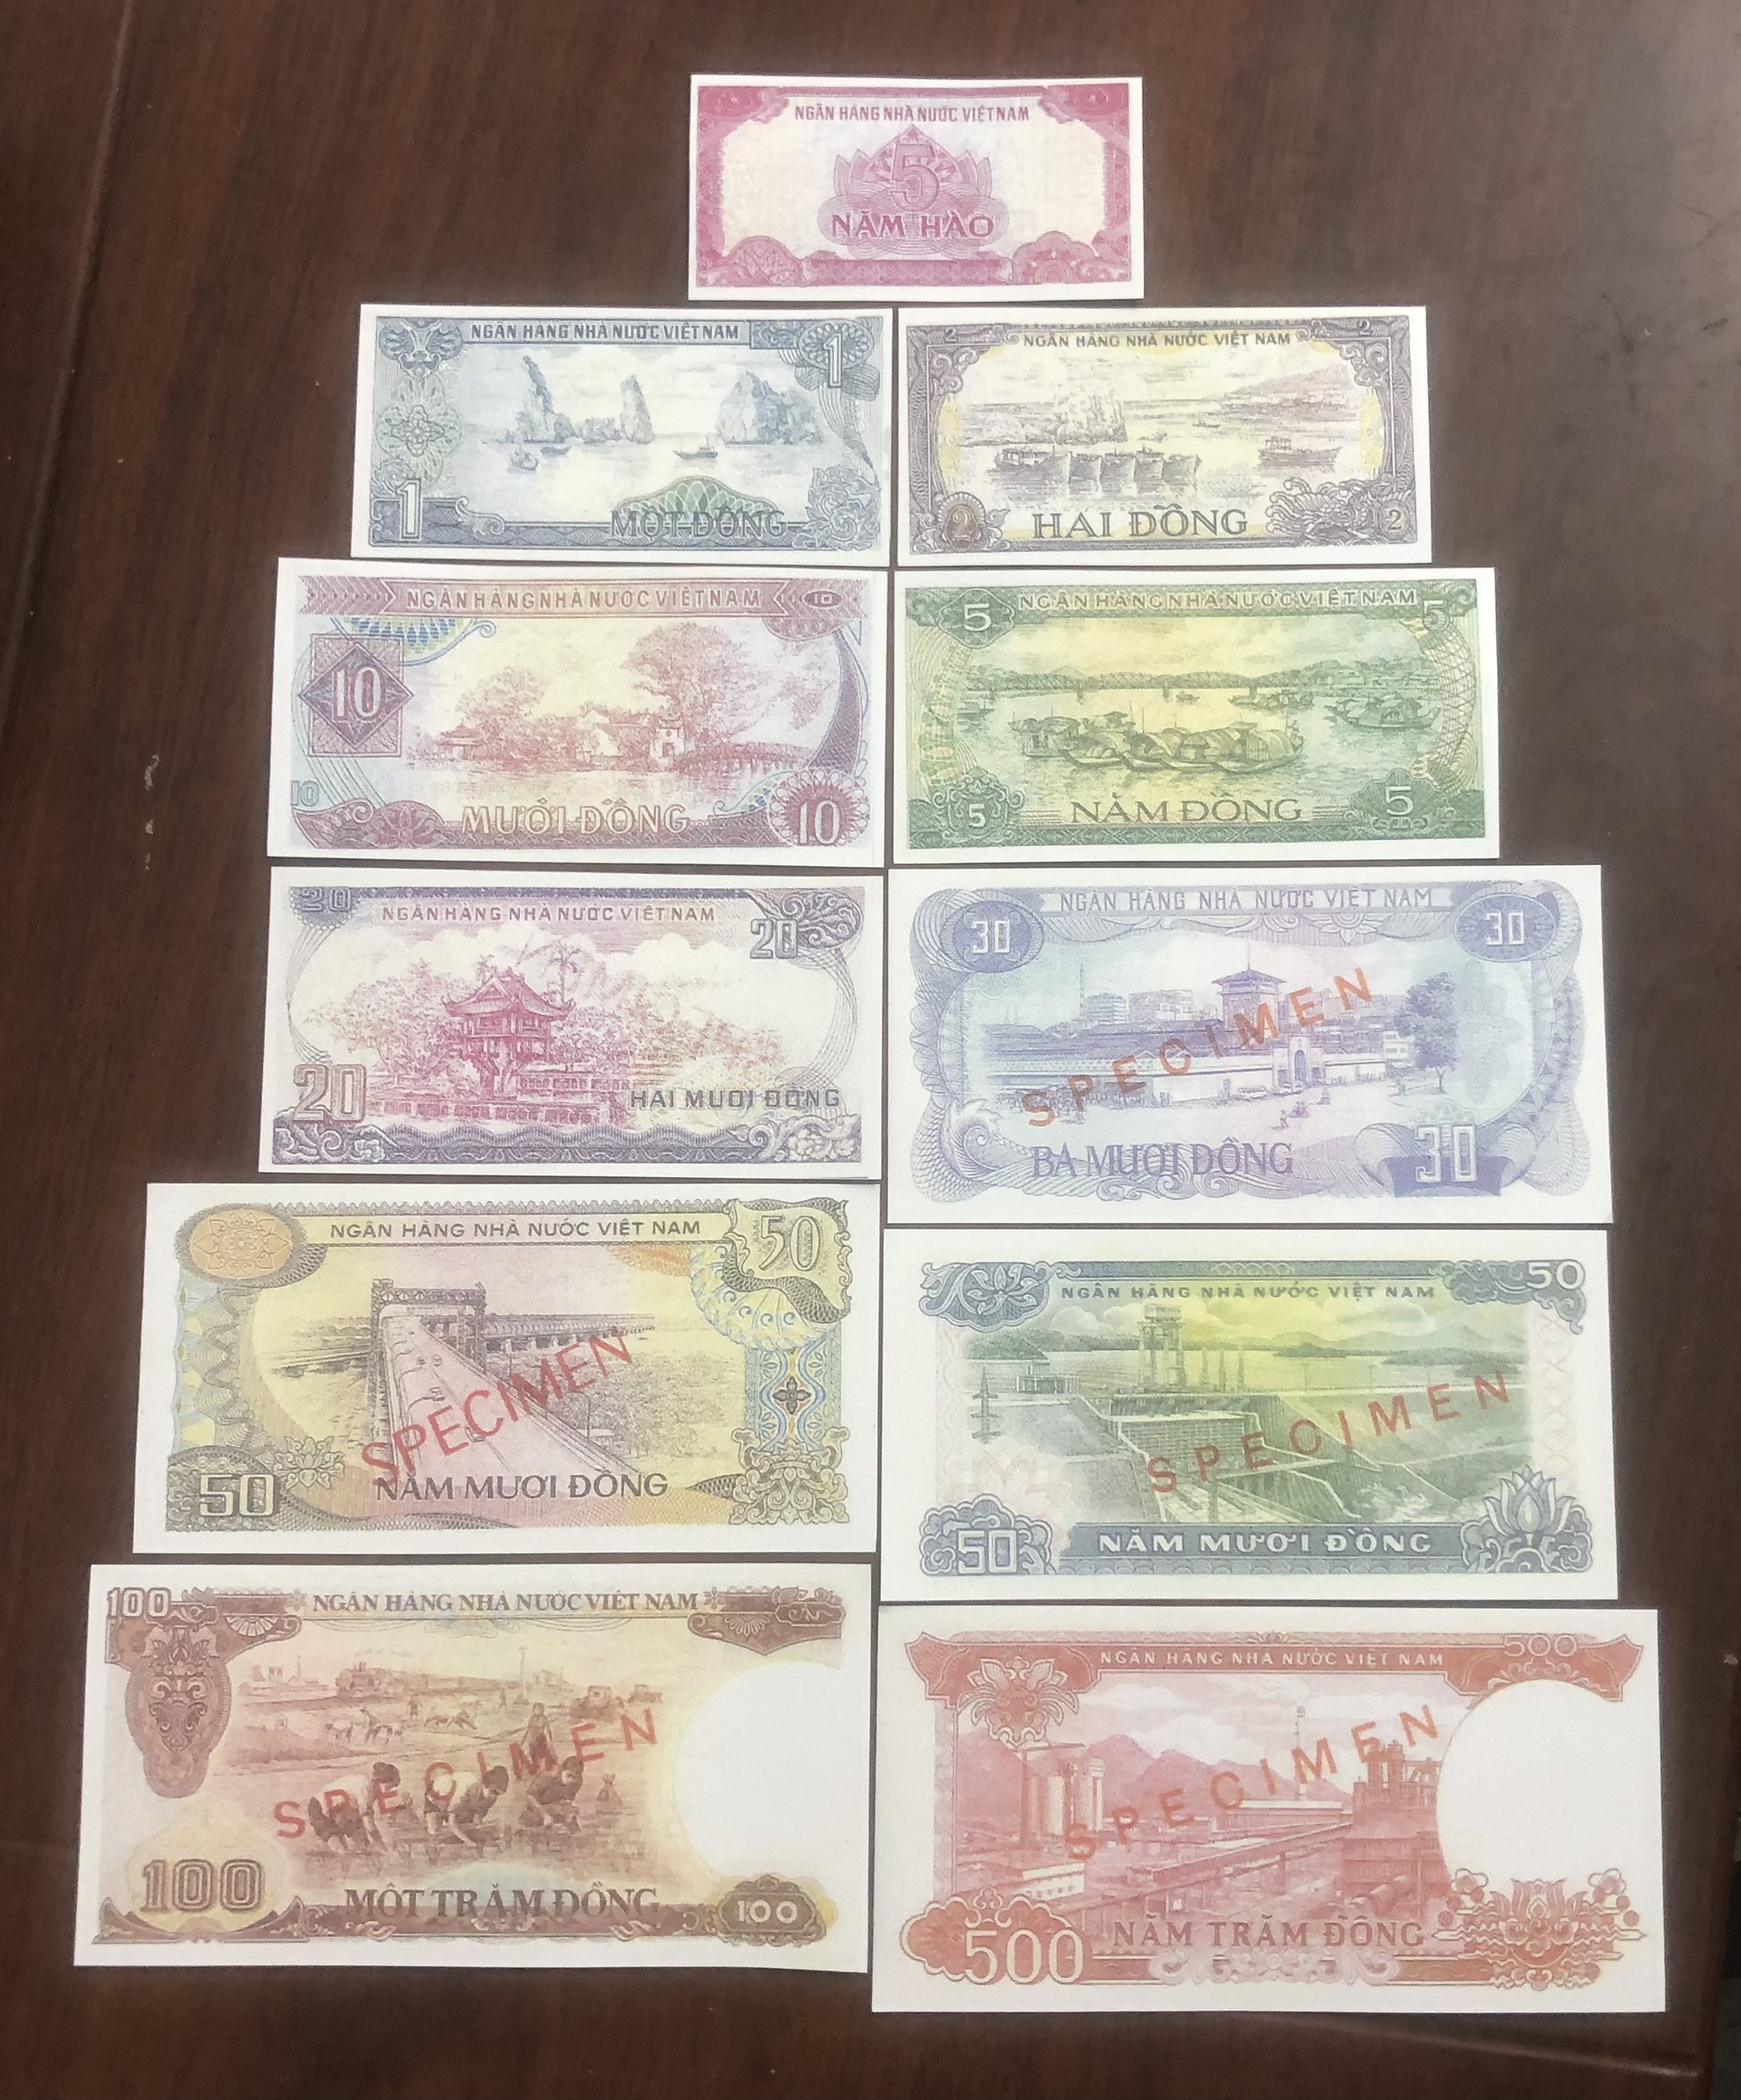 Đủ bộ tiền giấy Việt Nam SPECIMEN giấy mẫu 1985 11 mệnh giá lưu niệm copy sưu tầm